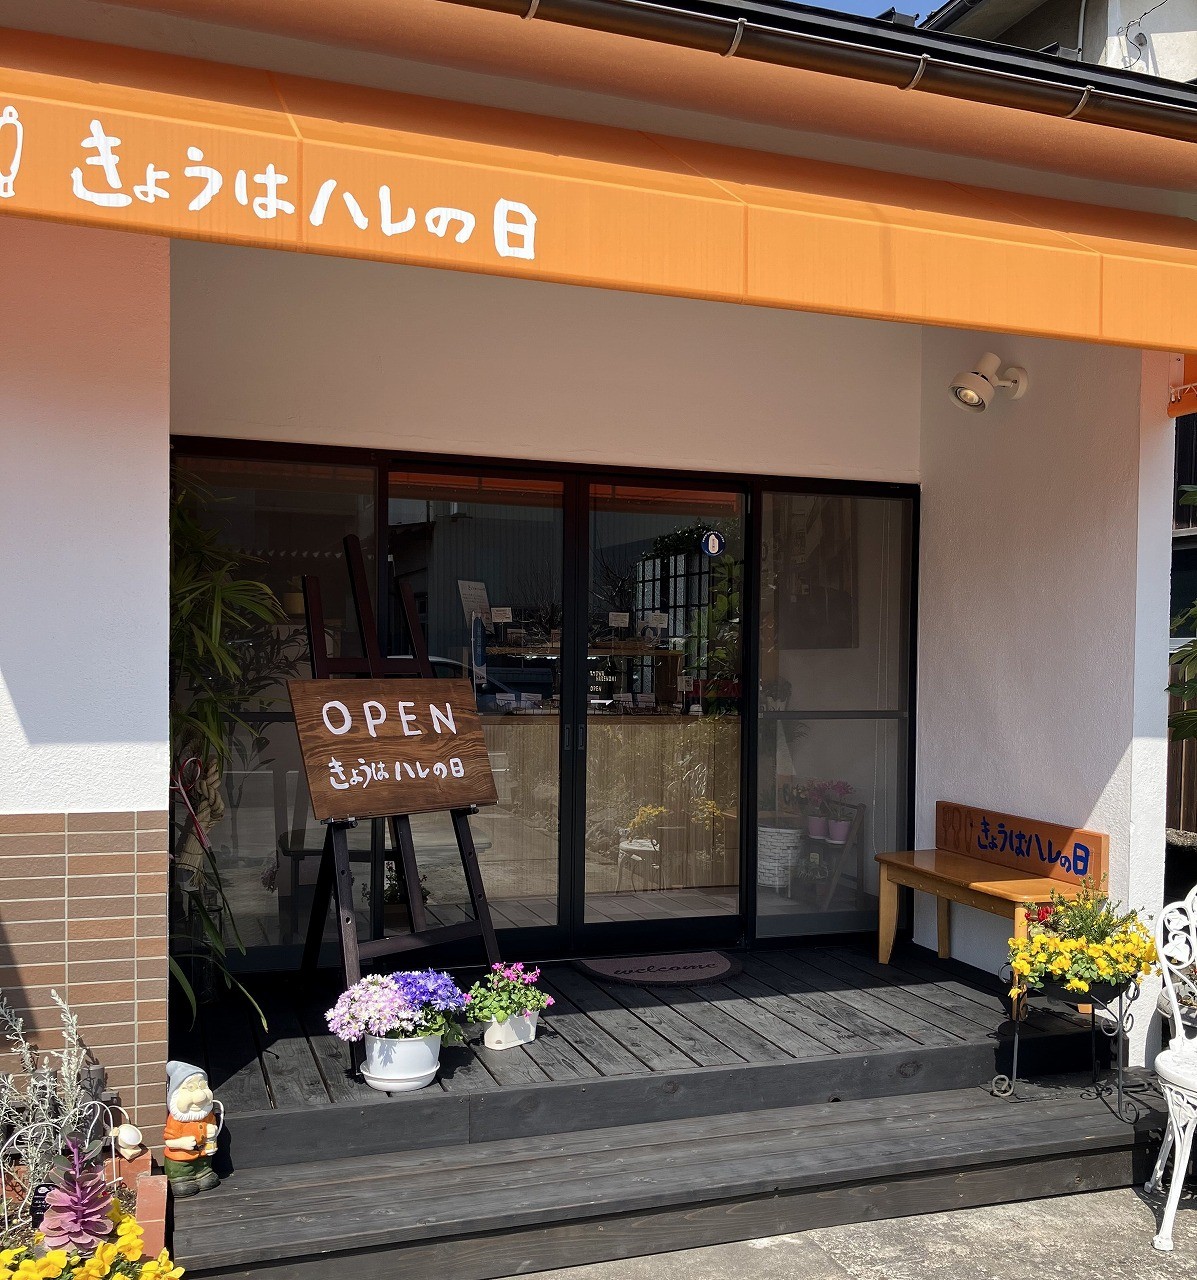 鳥取県鳥取市にオープンした米粉パウンドケーキ専門店『きょうはハレの日』の外観